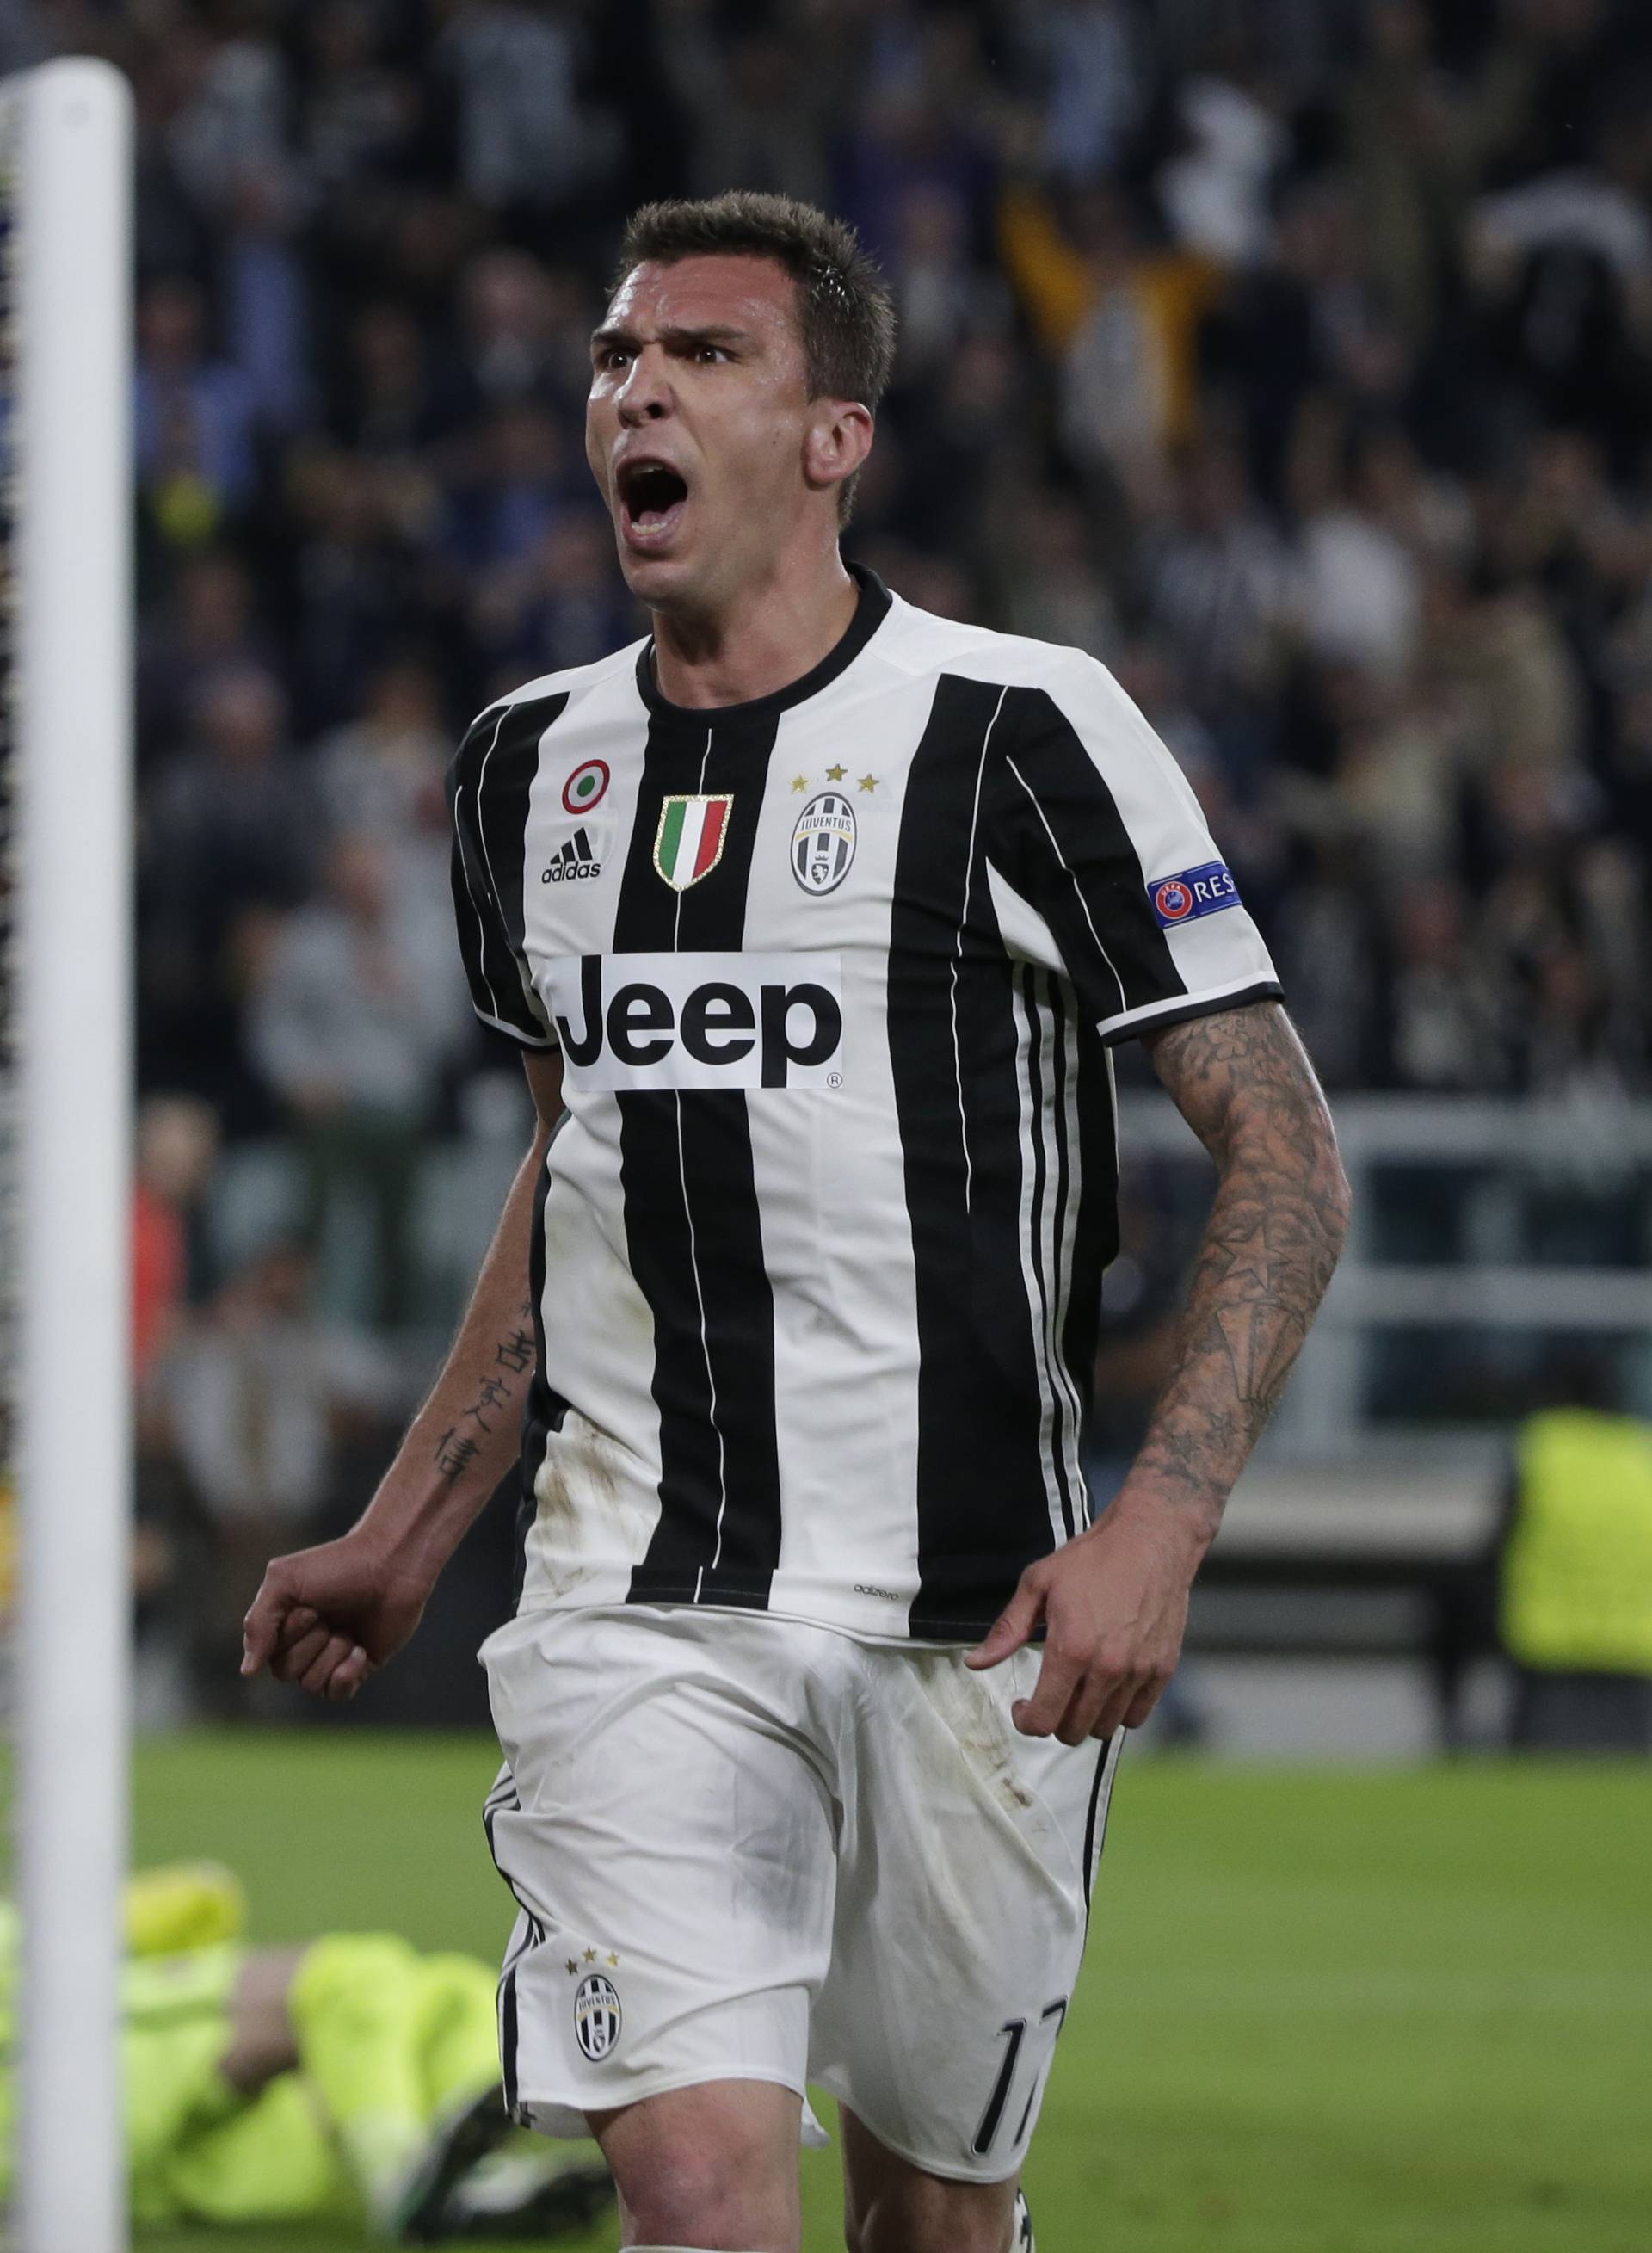 Juventus' Mario Mandzukic celebrates scoring their first goal